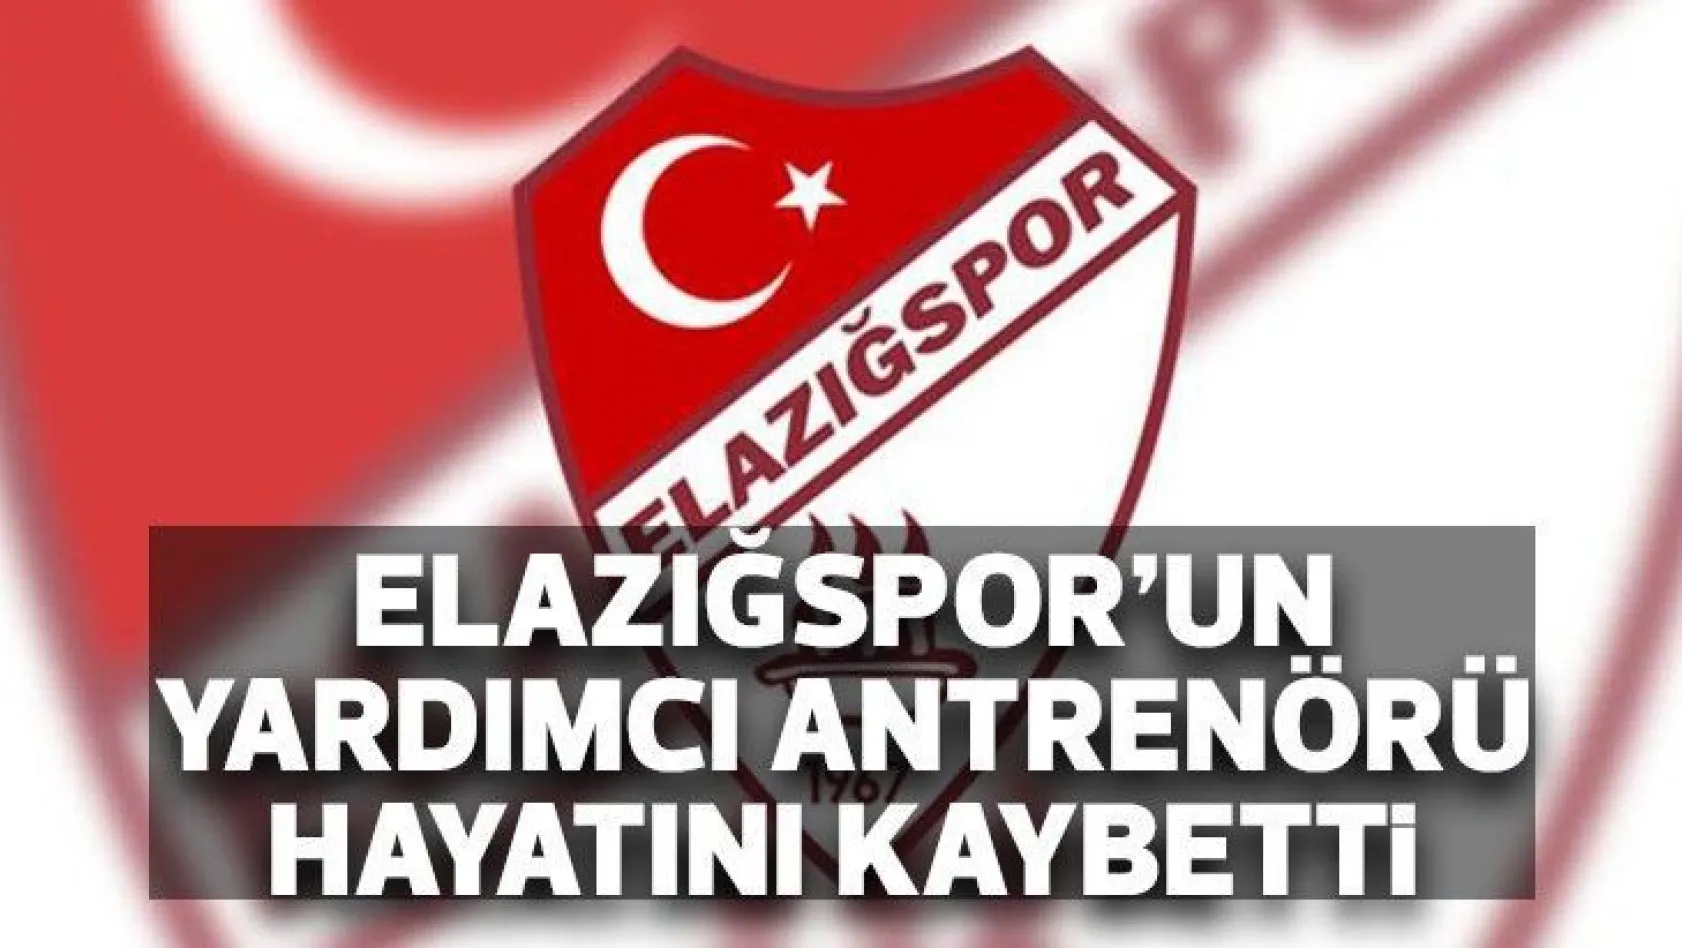 Elazığspor'un yardımcı antrenörü hayatını kaybetti